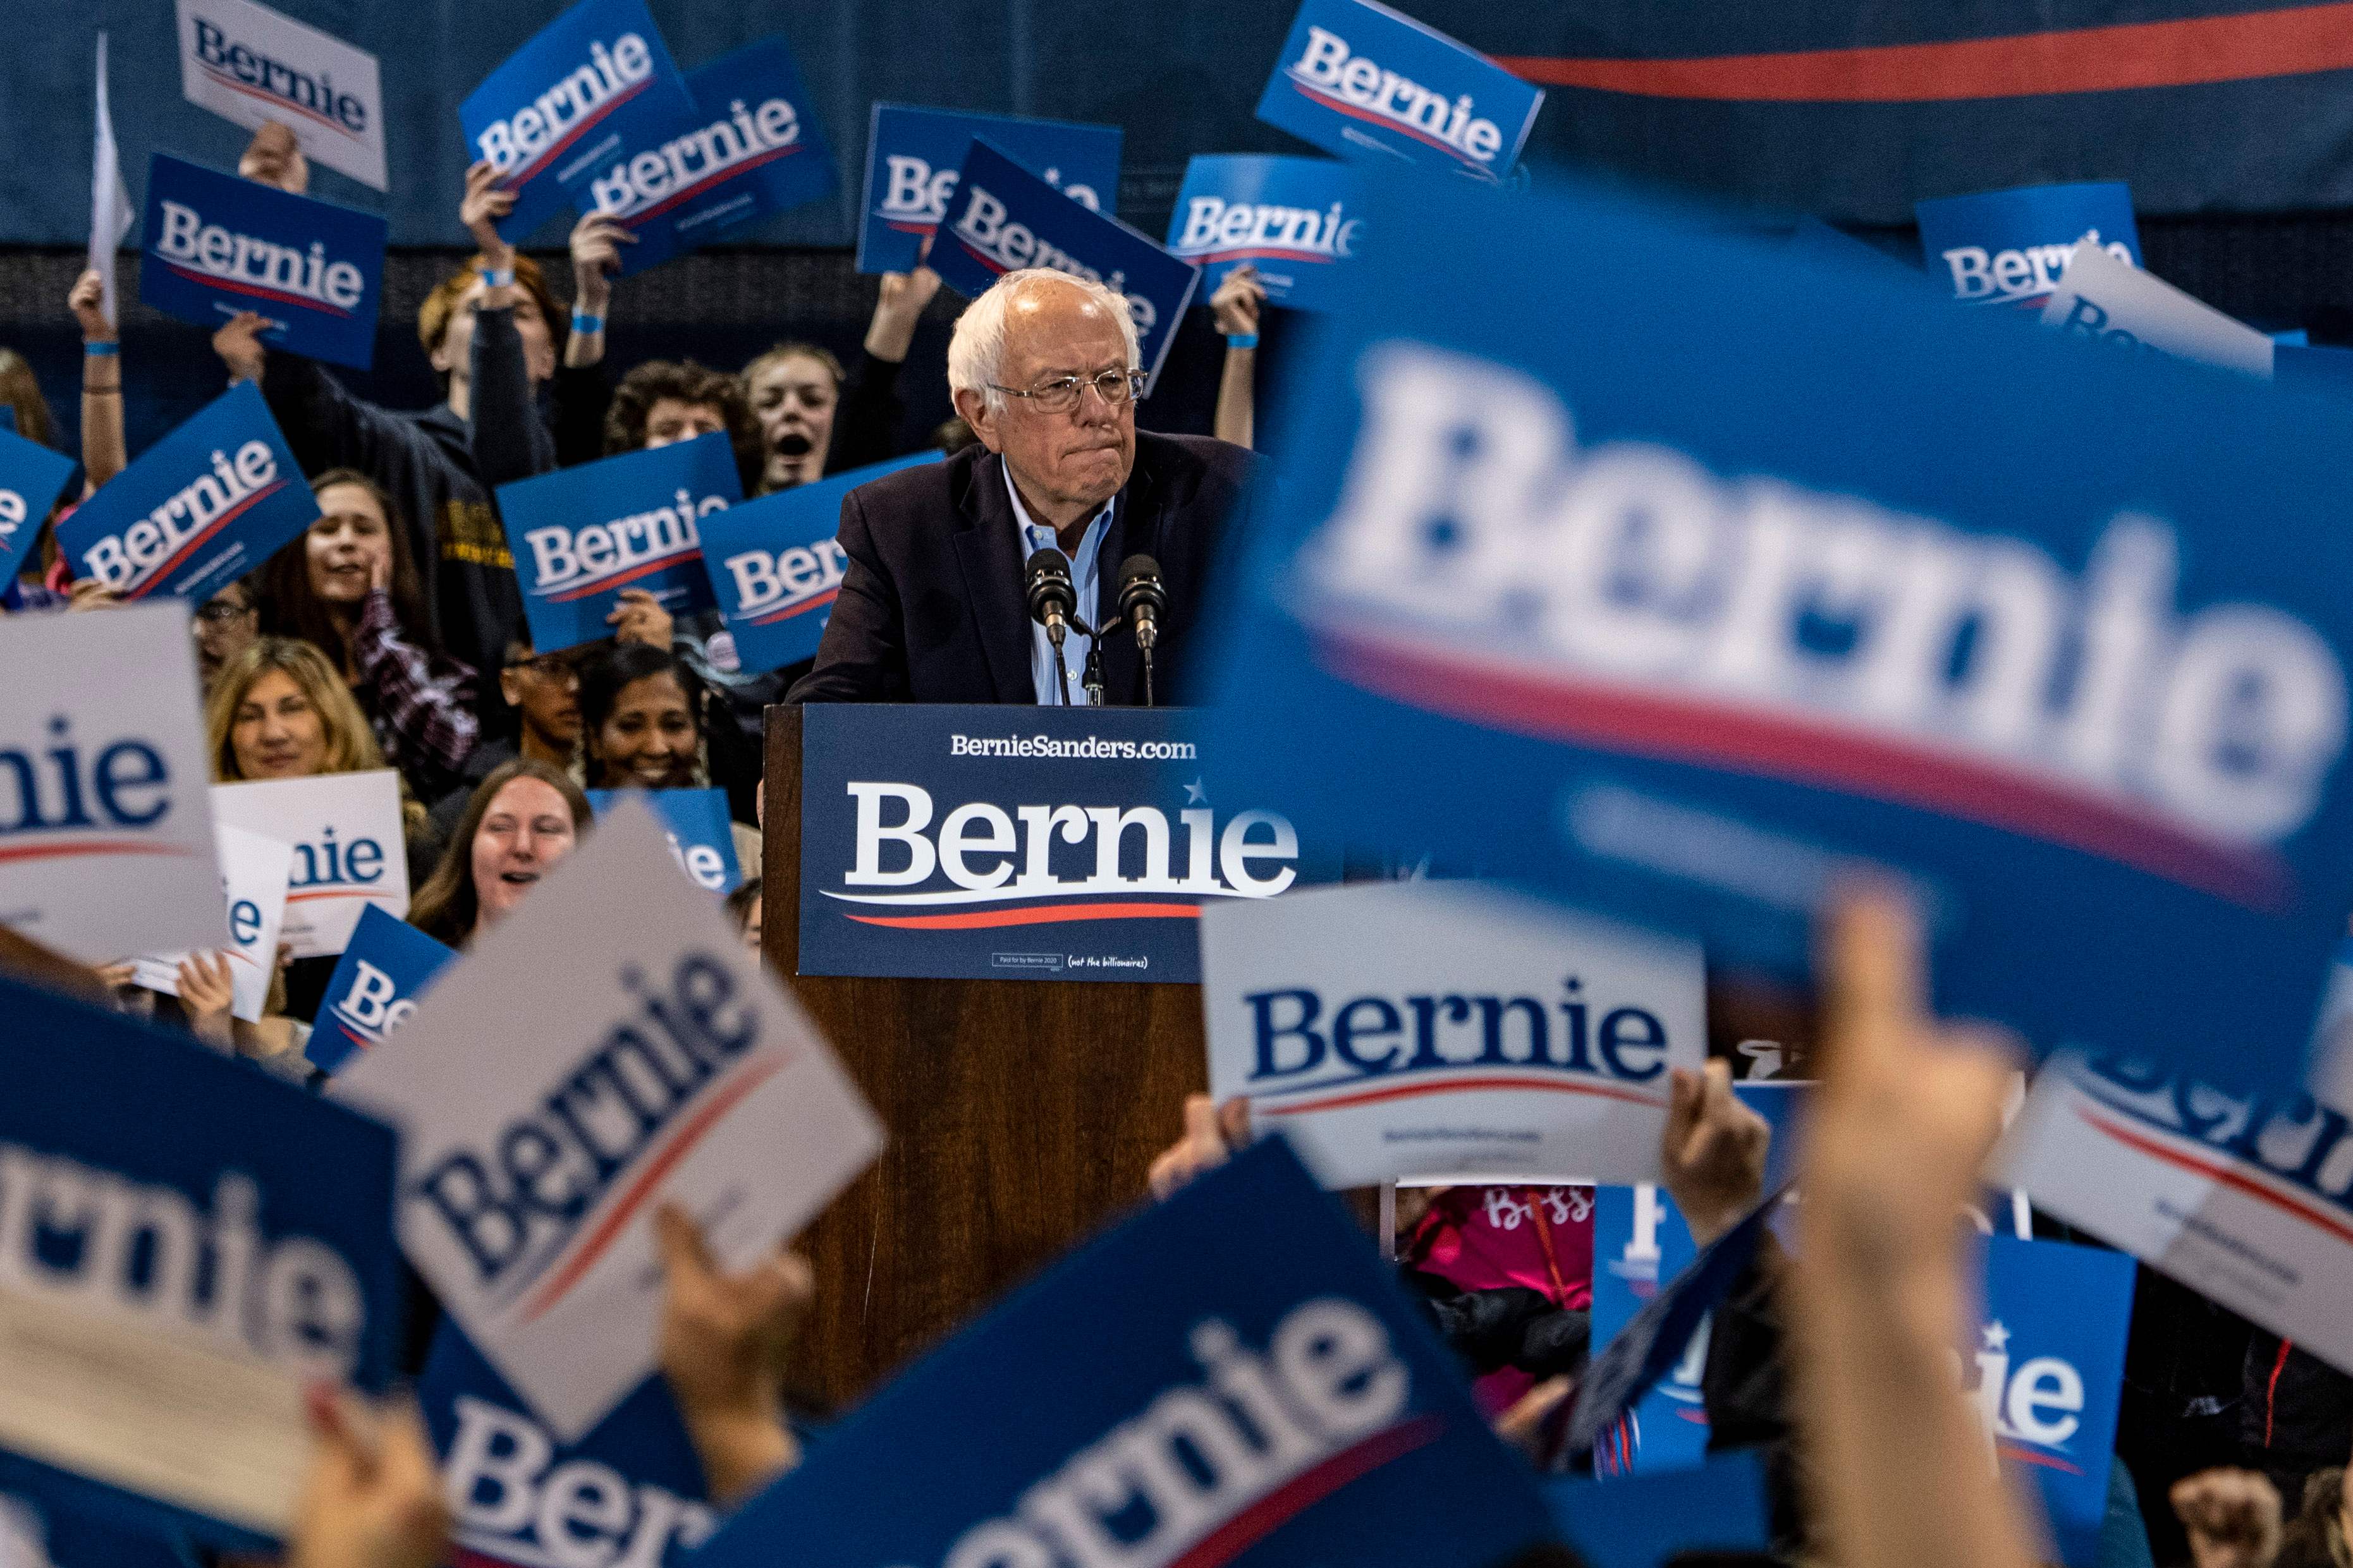 Bernie Sanders lidera las encuestas en estados importantes como California. (Foto Prensa Libre: AFP)